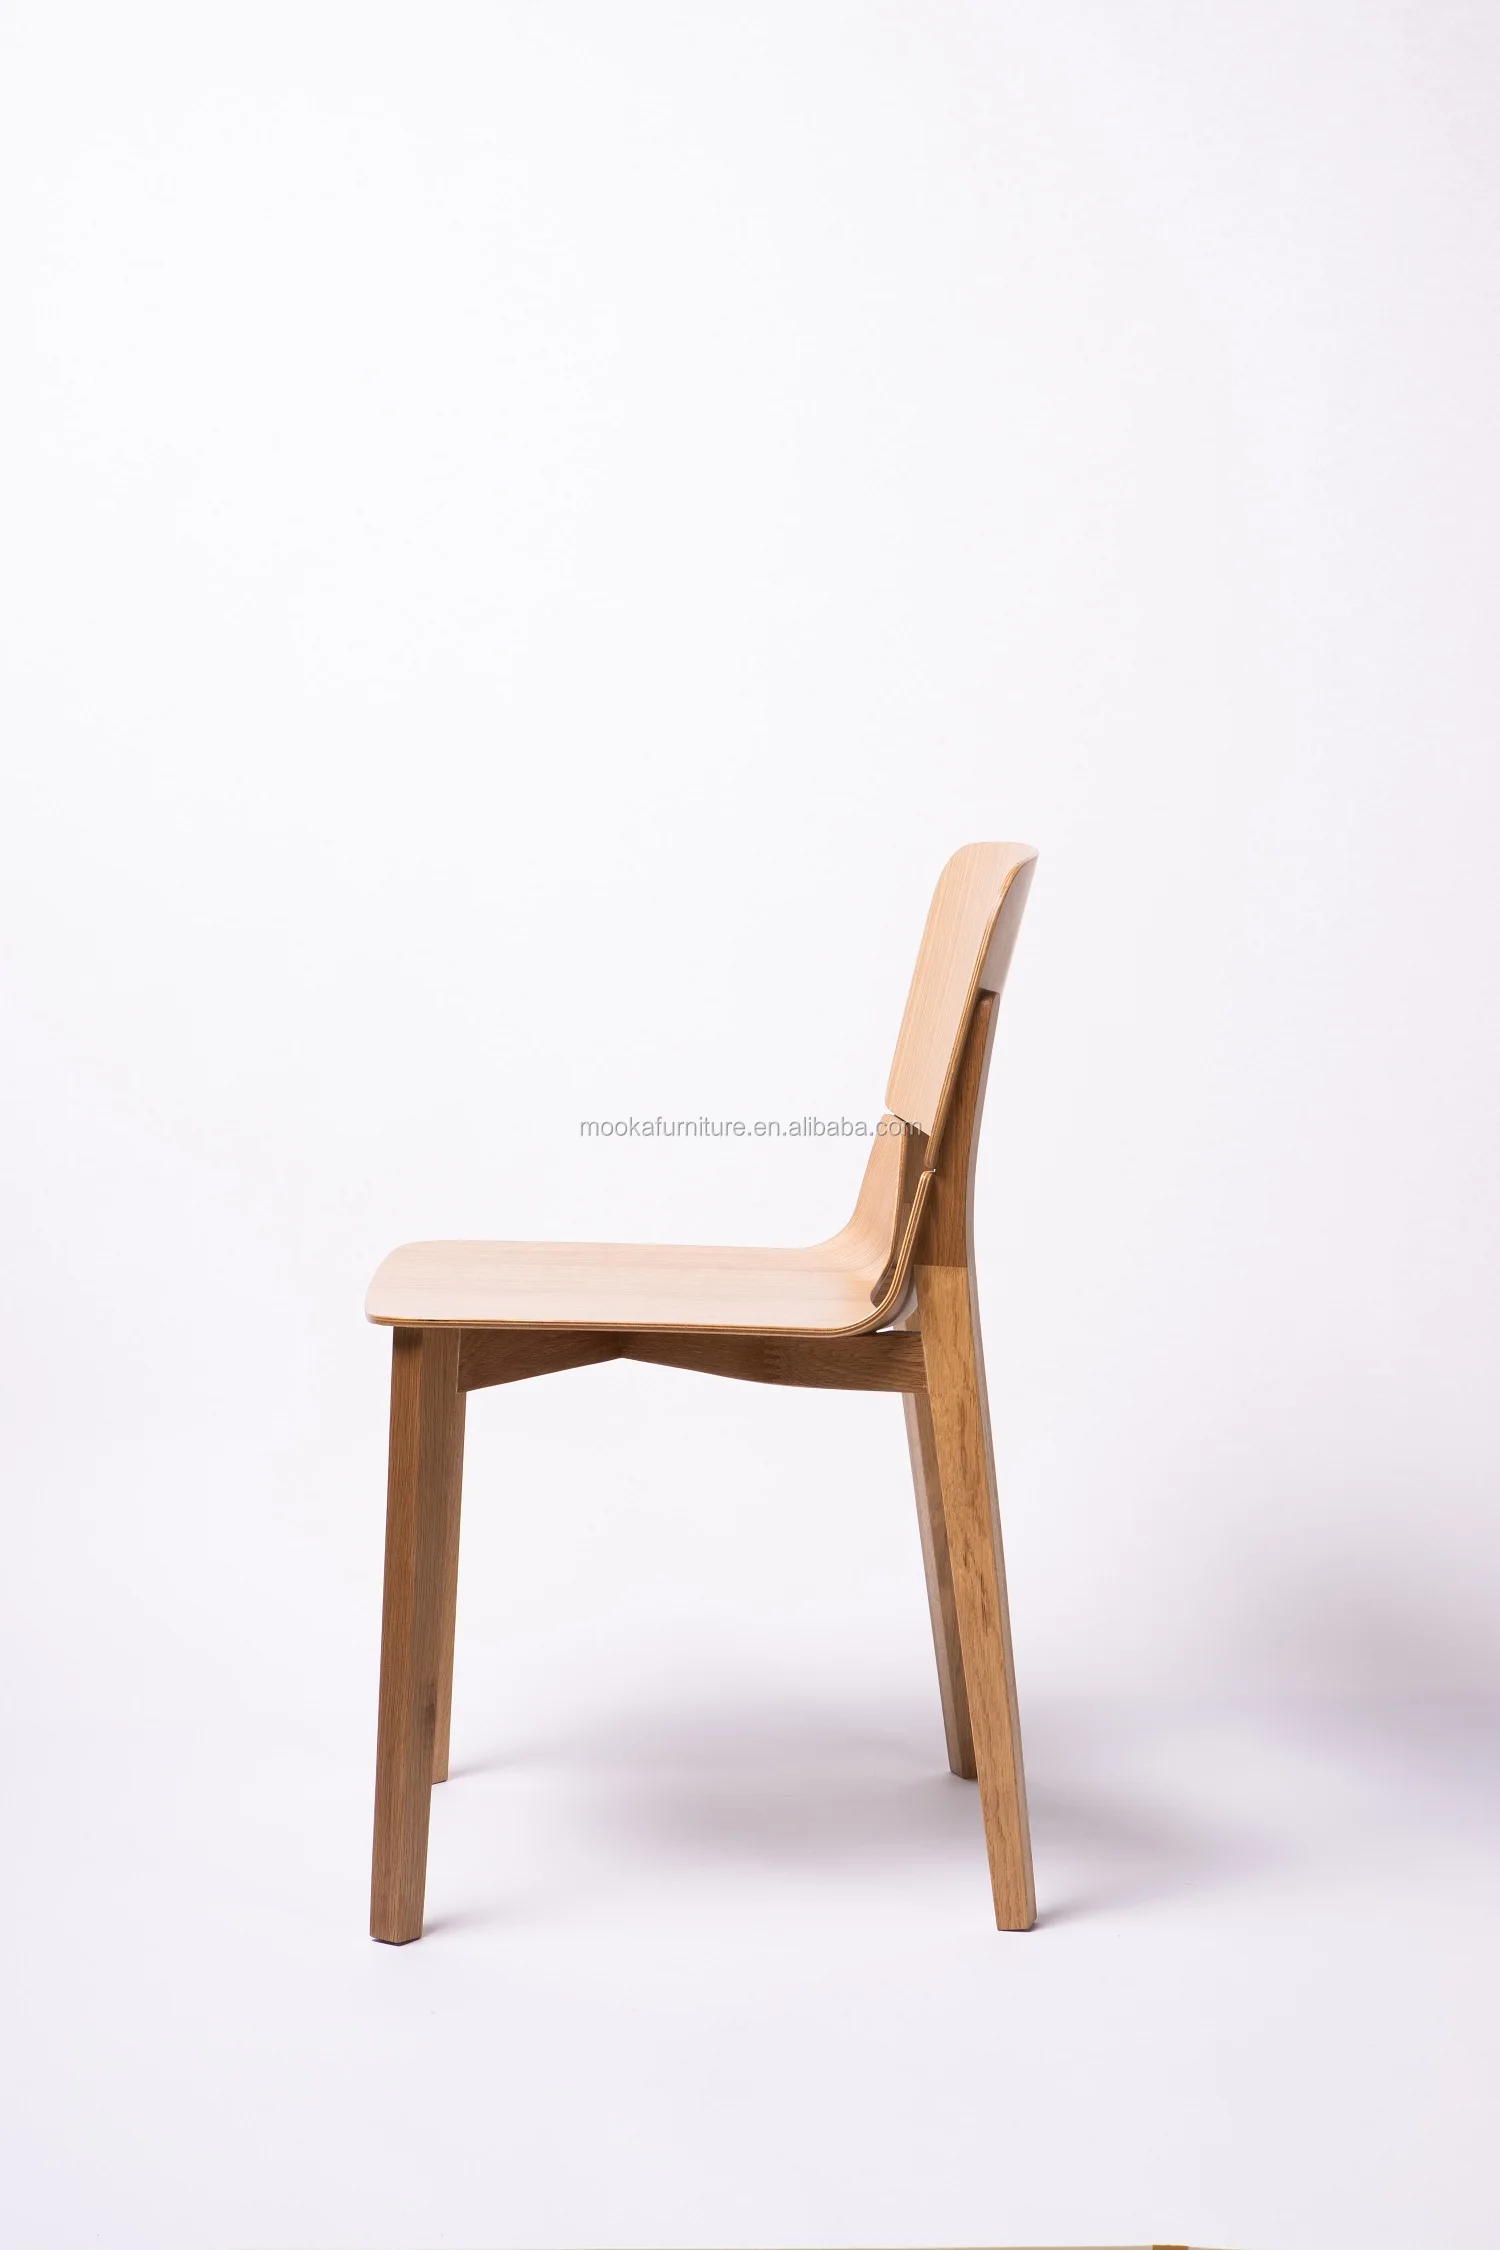 斯堪的纳维亚家居装饰坚固耐用足够的餐厅椅实木橡木餐椅北欧风格木制